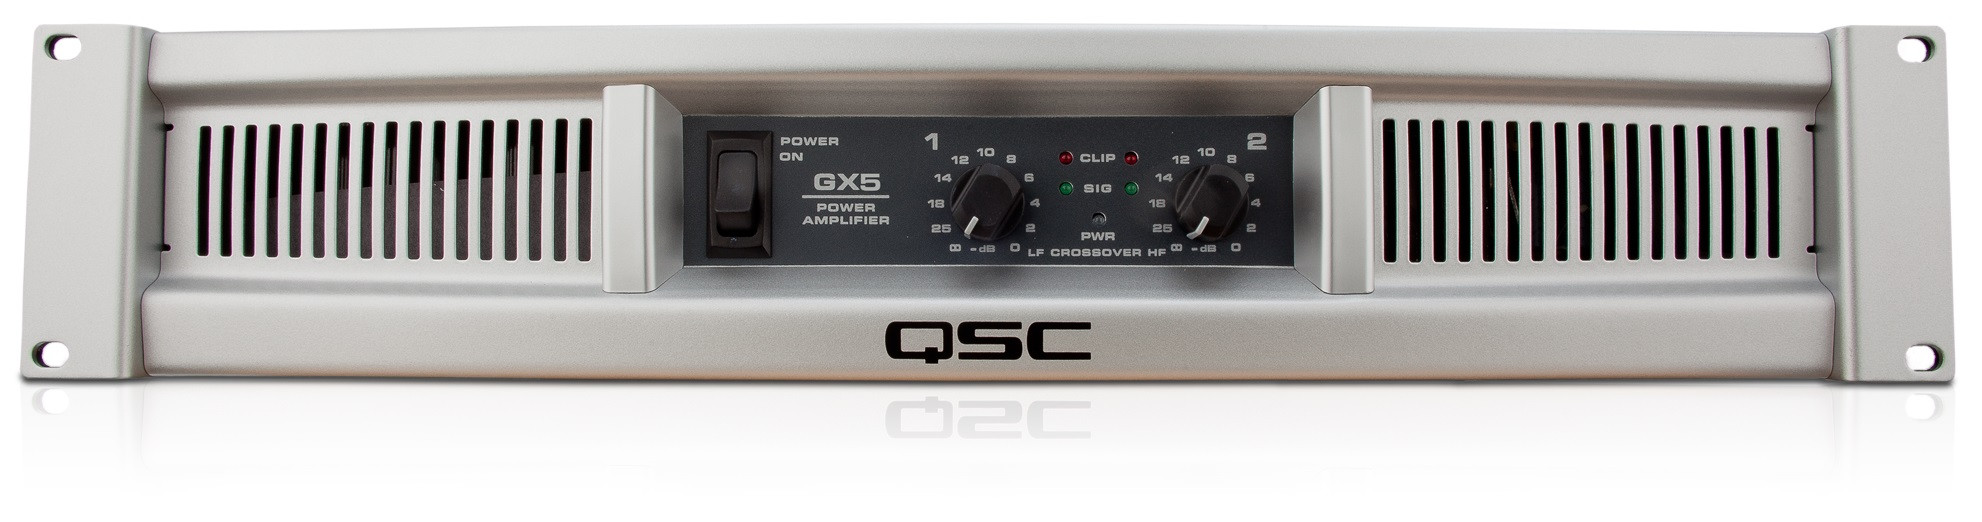 Hlavní obrázek Dvoukanálové zesilovače QSC GX5